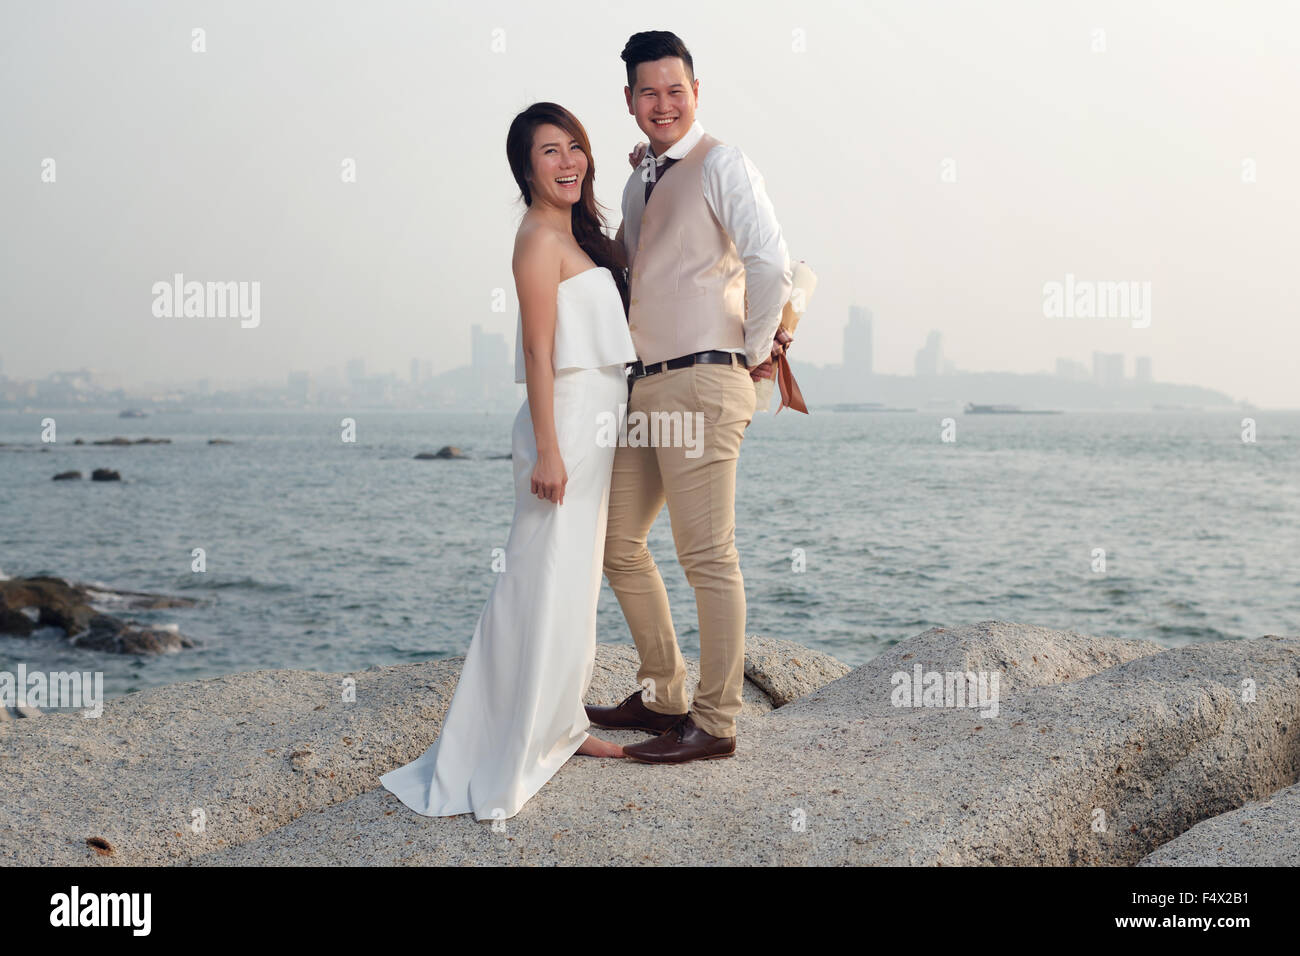 vor Hochzeit im freien romantischen Sonnenuntergang Strand Kleid Romantik  Freundin Freund Stockfotografie - Alamy